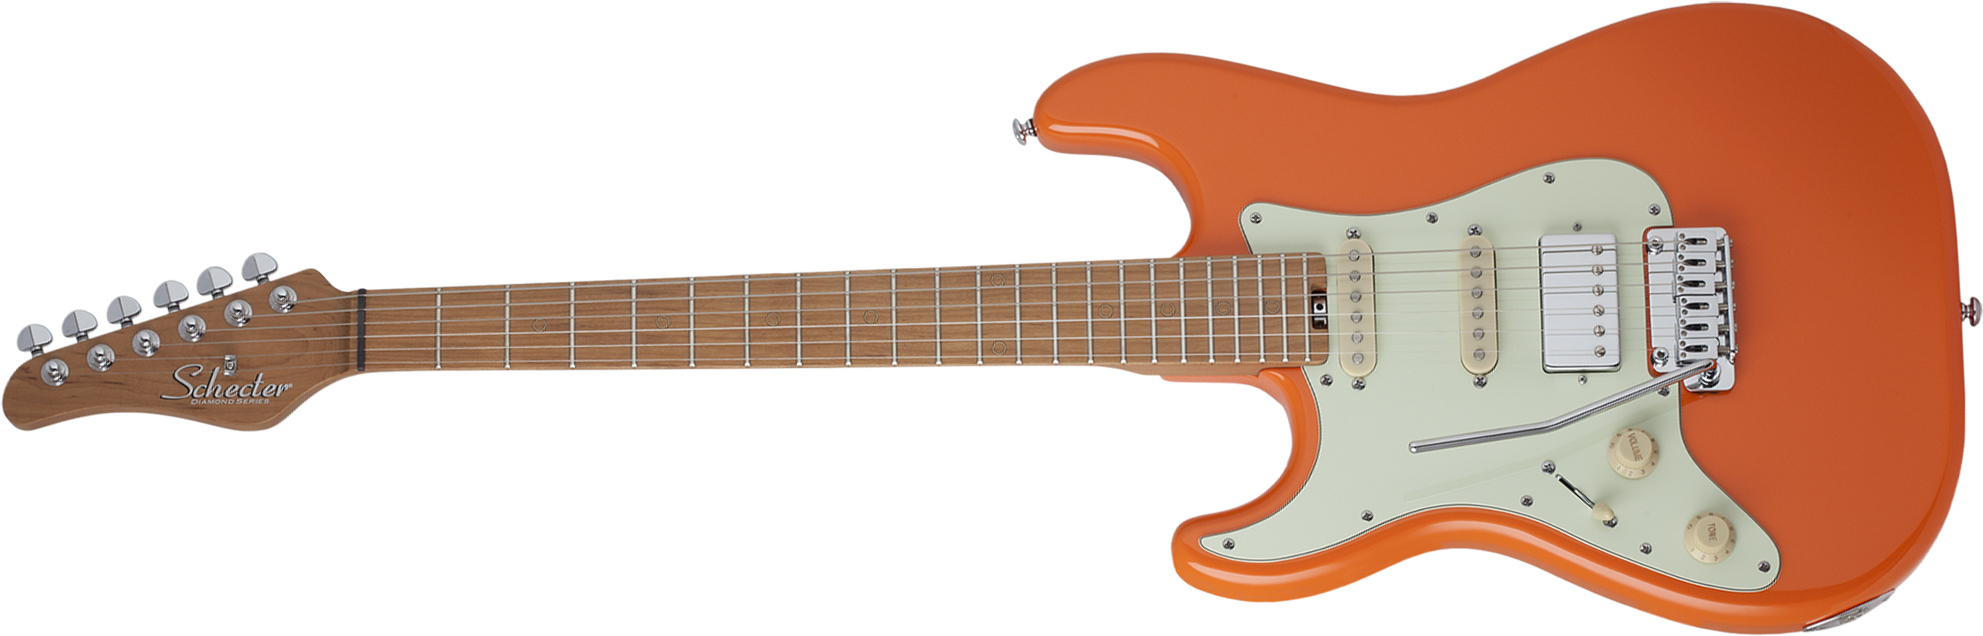 Schecter Nick Johnston Traditional Lh Gaucher Hss Trem Mn - Atomic Orange - Guitarra electrica para zurdos - Main picture